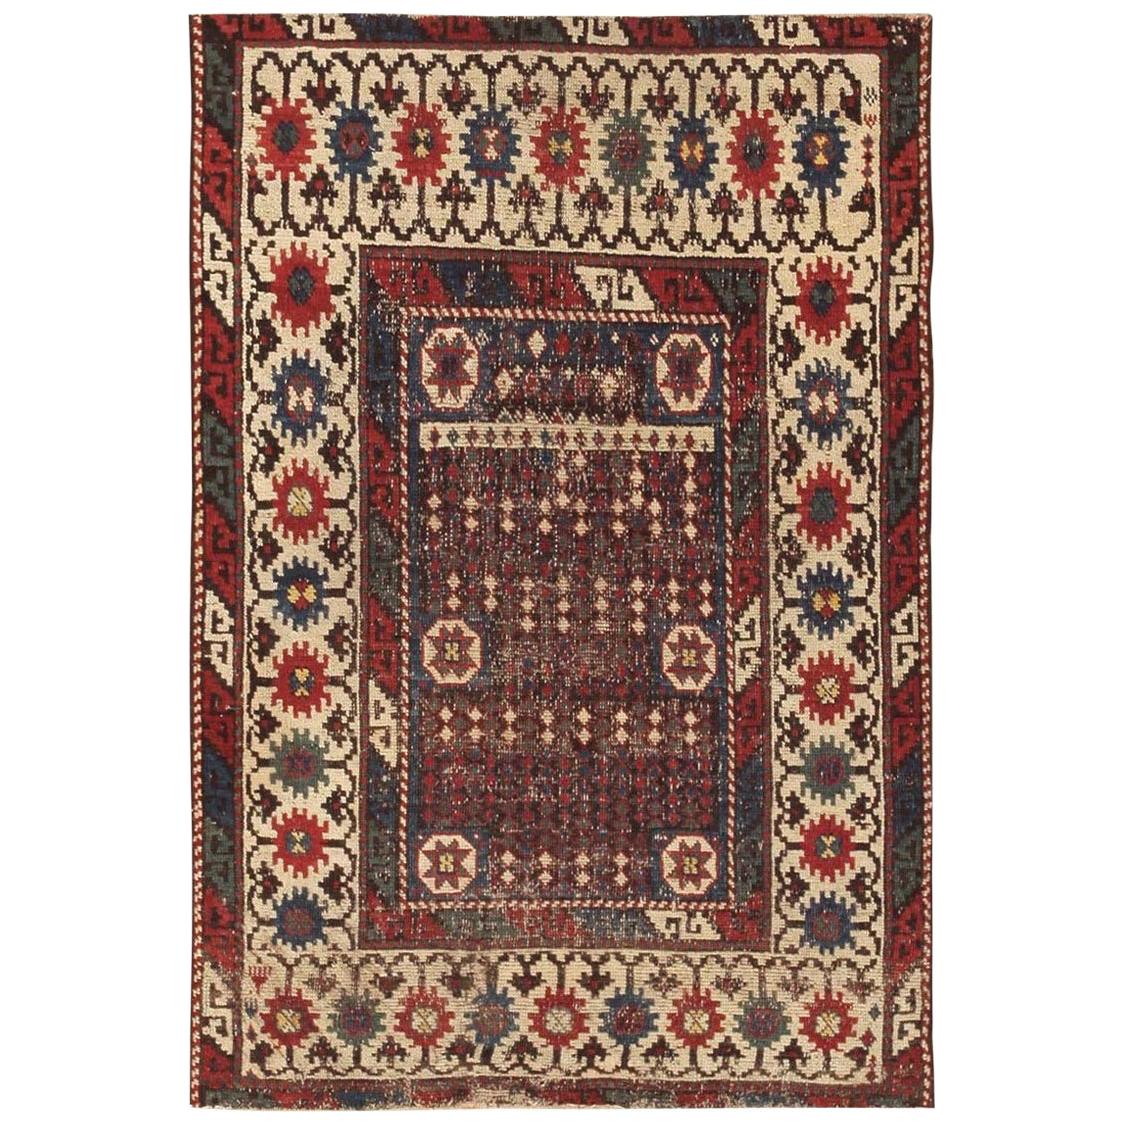 Antique Caucasian Avar Rug. Size: 2' 7" x 3' 10"